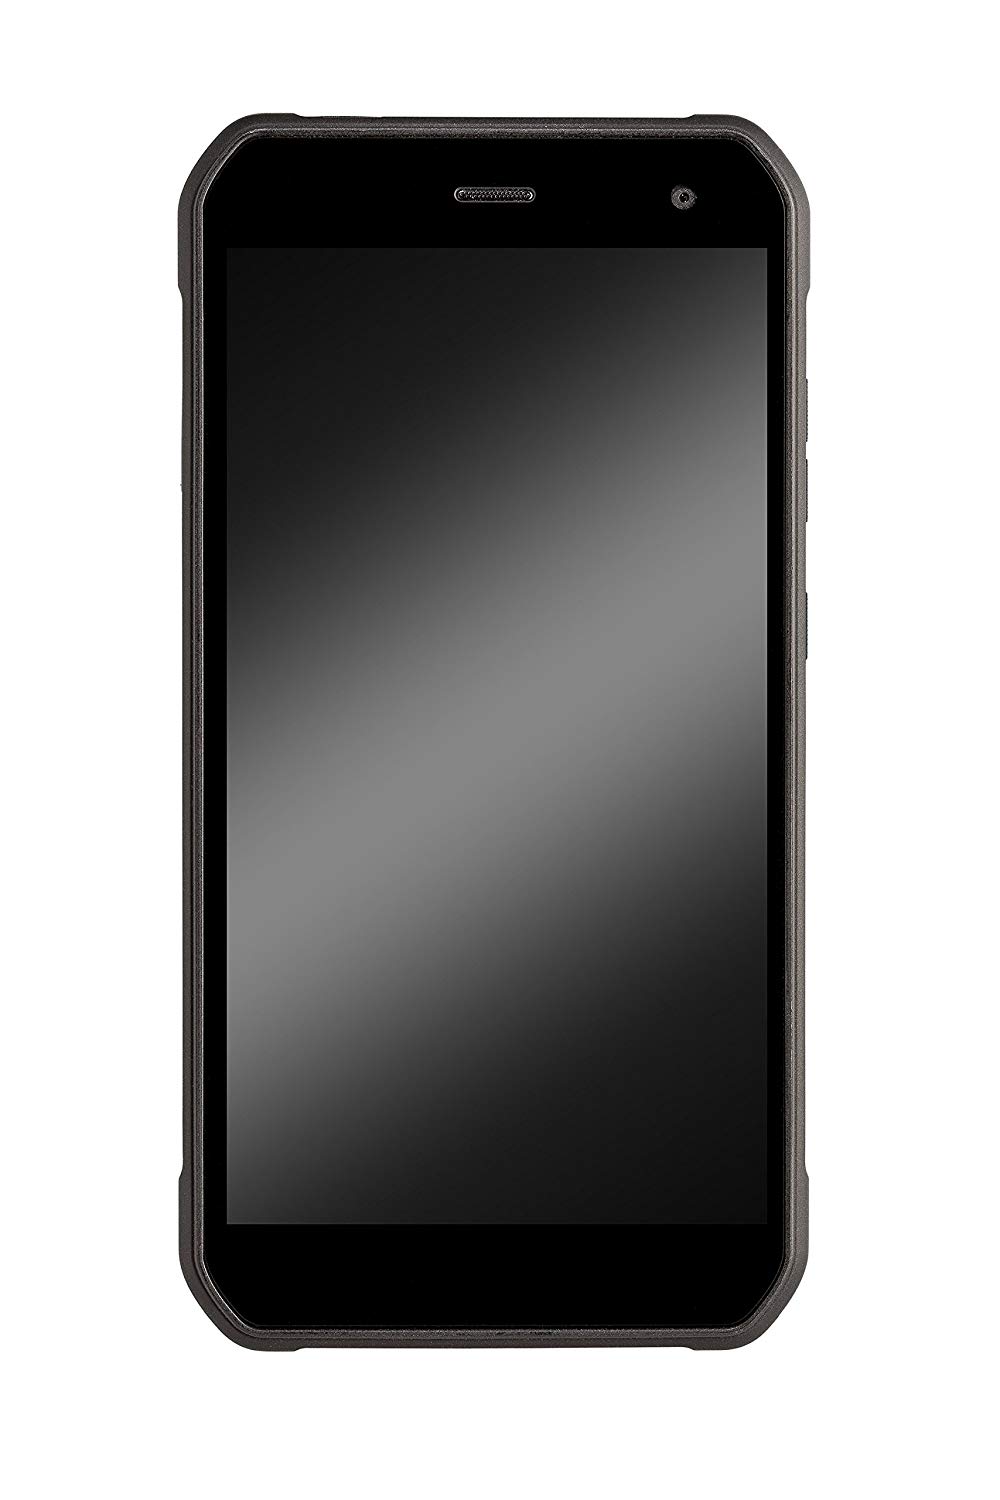 Cyrus Outdoor Smartphone CS40 Freestlye LTE Dual Sim Stoßsicher, staubgeschützt, wasserfest, mit USB-C Ladebuchse, 16,0 Megapixel Kamera mit Auto-Focus, 4GB RAM, 32GB ROM, 1,5 GHz Octacore Prozessor und Android 7.0 Nougat (SMA-CYR10123)